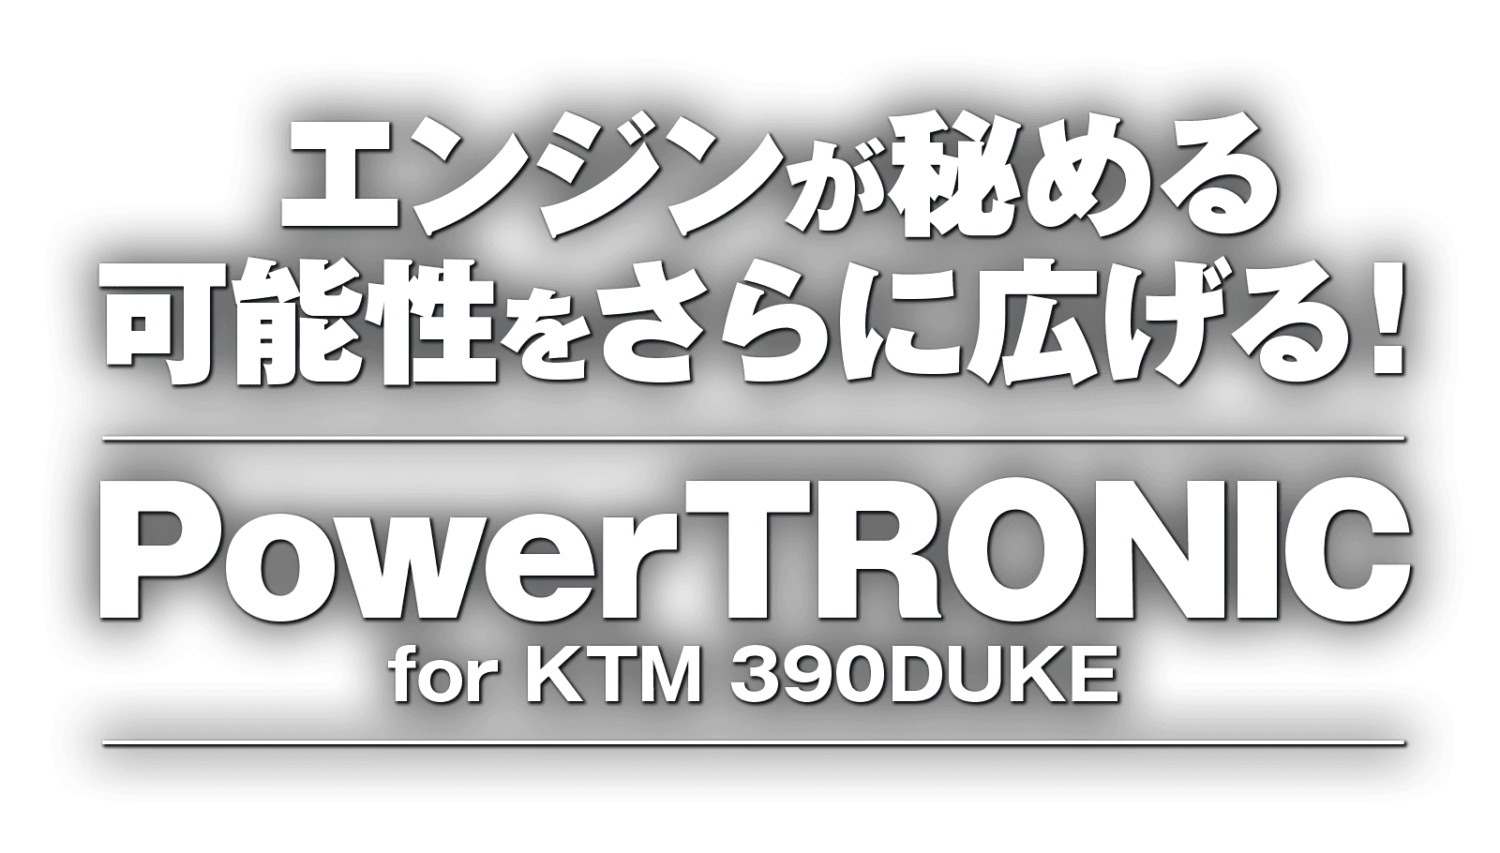 エンジンが秘める可能性をさらに広げる！ Power TRONIC for KTM 390DUKE